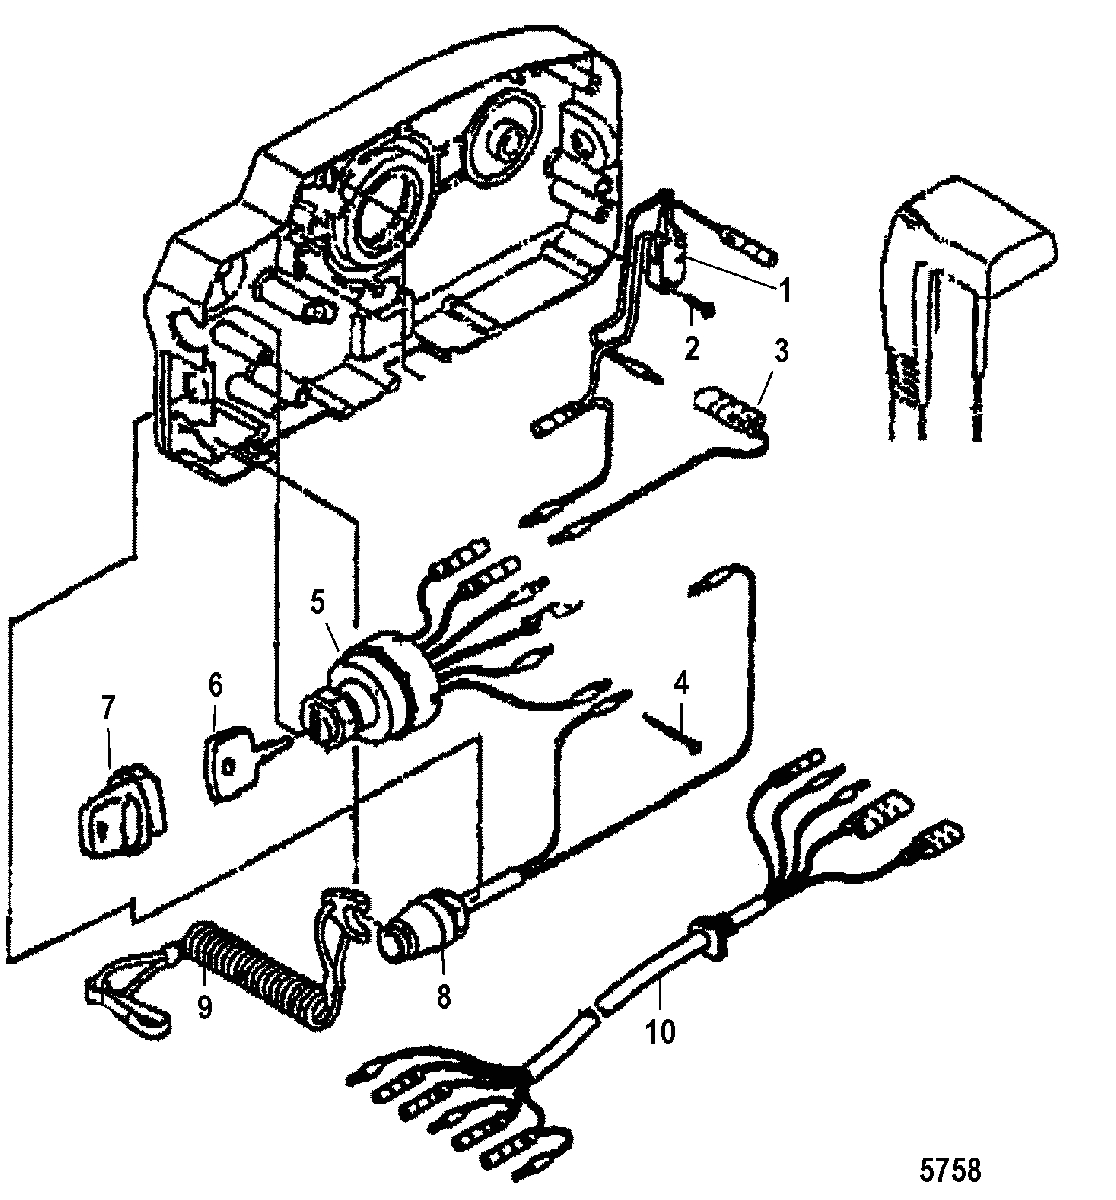 mercury control box wiring wiring diagram paper mercury outboard remote control wiring diagram mercury outboard control wiring